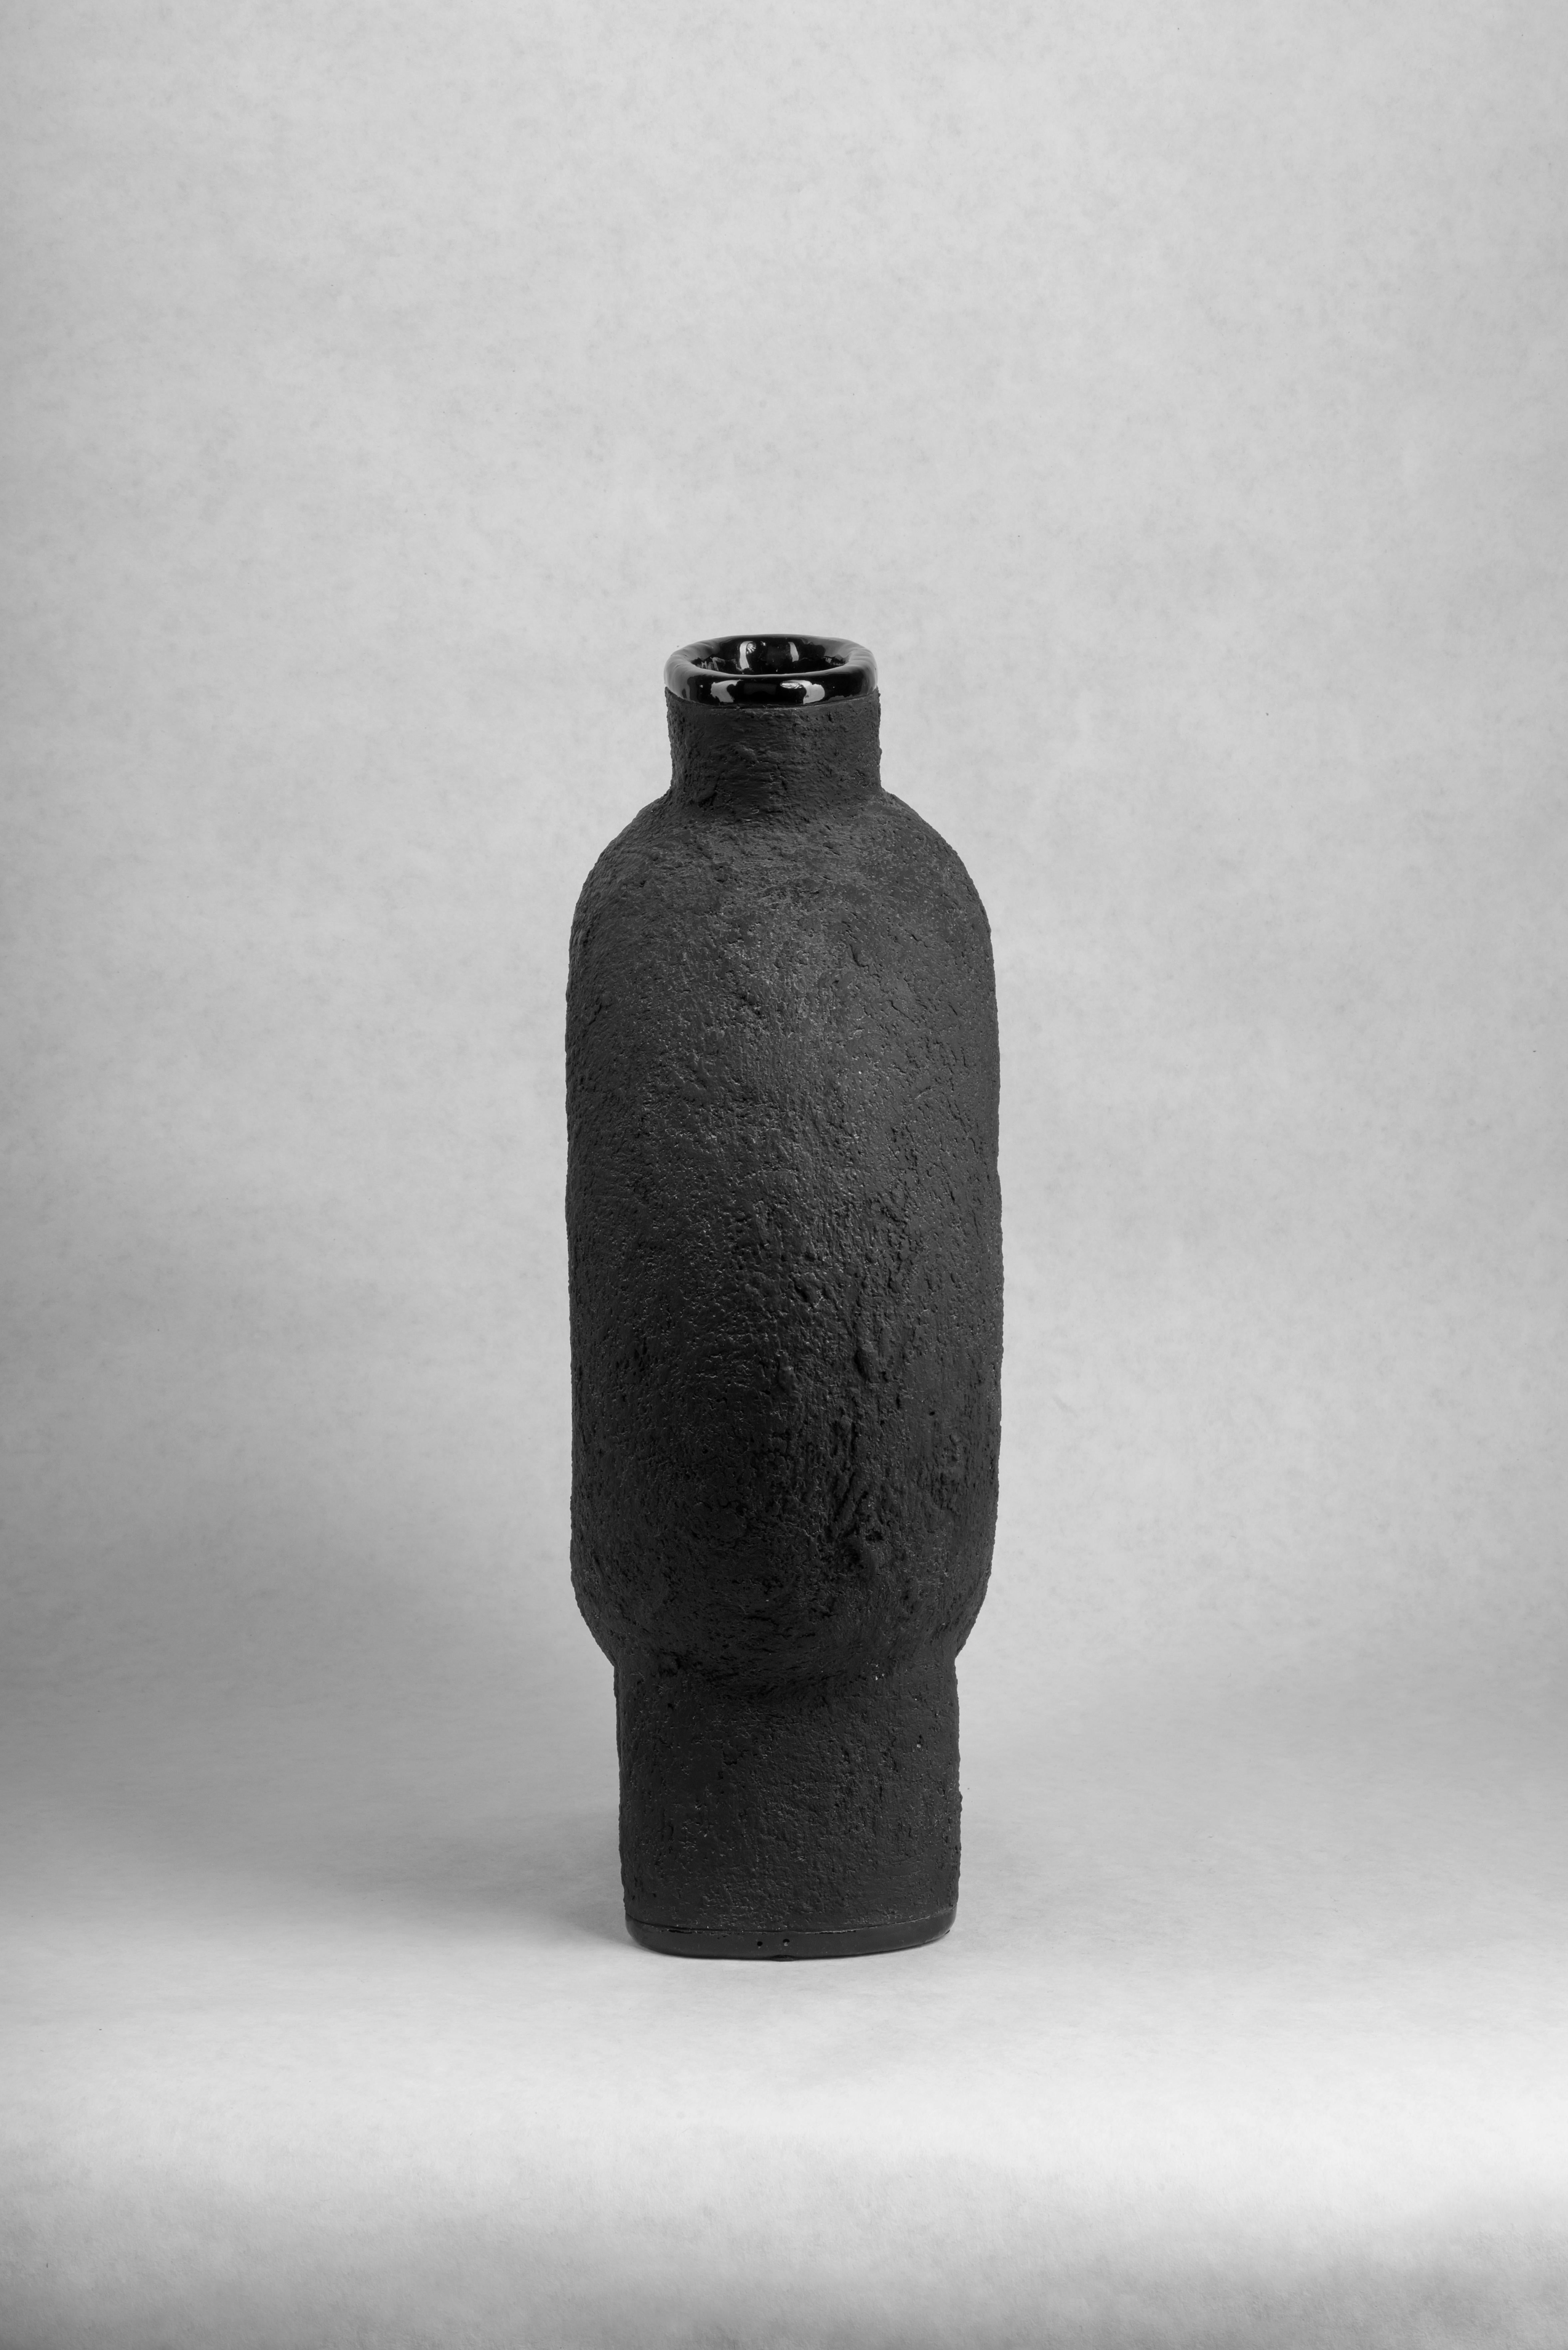 Paar skulptierte Keramikvasen von FAINA
Entwurf: Victoriya Yakusha
MATERIAL: MATERIAL: Ton/Keramik
Abmessungen: 43 x 20 x H 50 cm


Die Vase ist Teil einer Serie von 5 Vasen, der Satz von Vasen besteht aus:

1. Vase auf drei Beinen: Höhe: 500 x